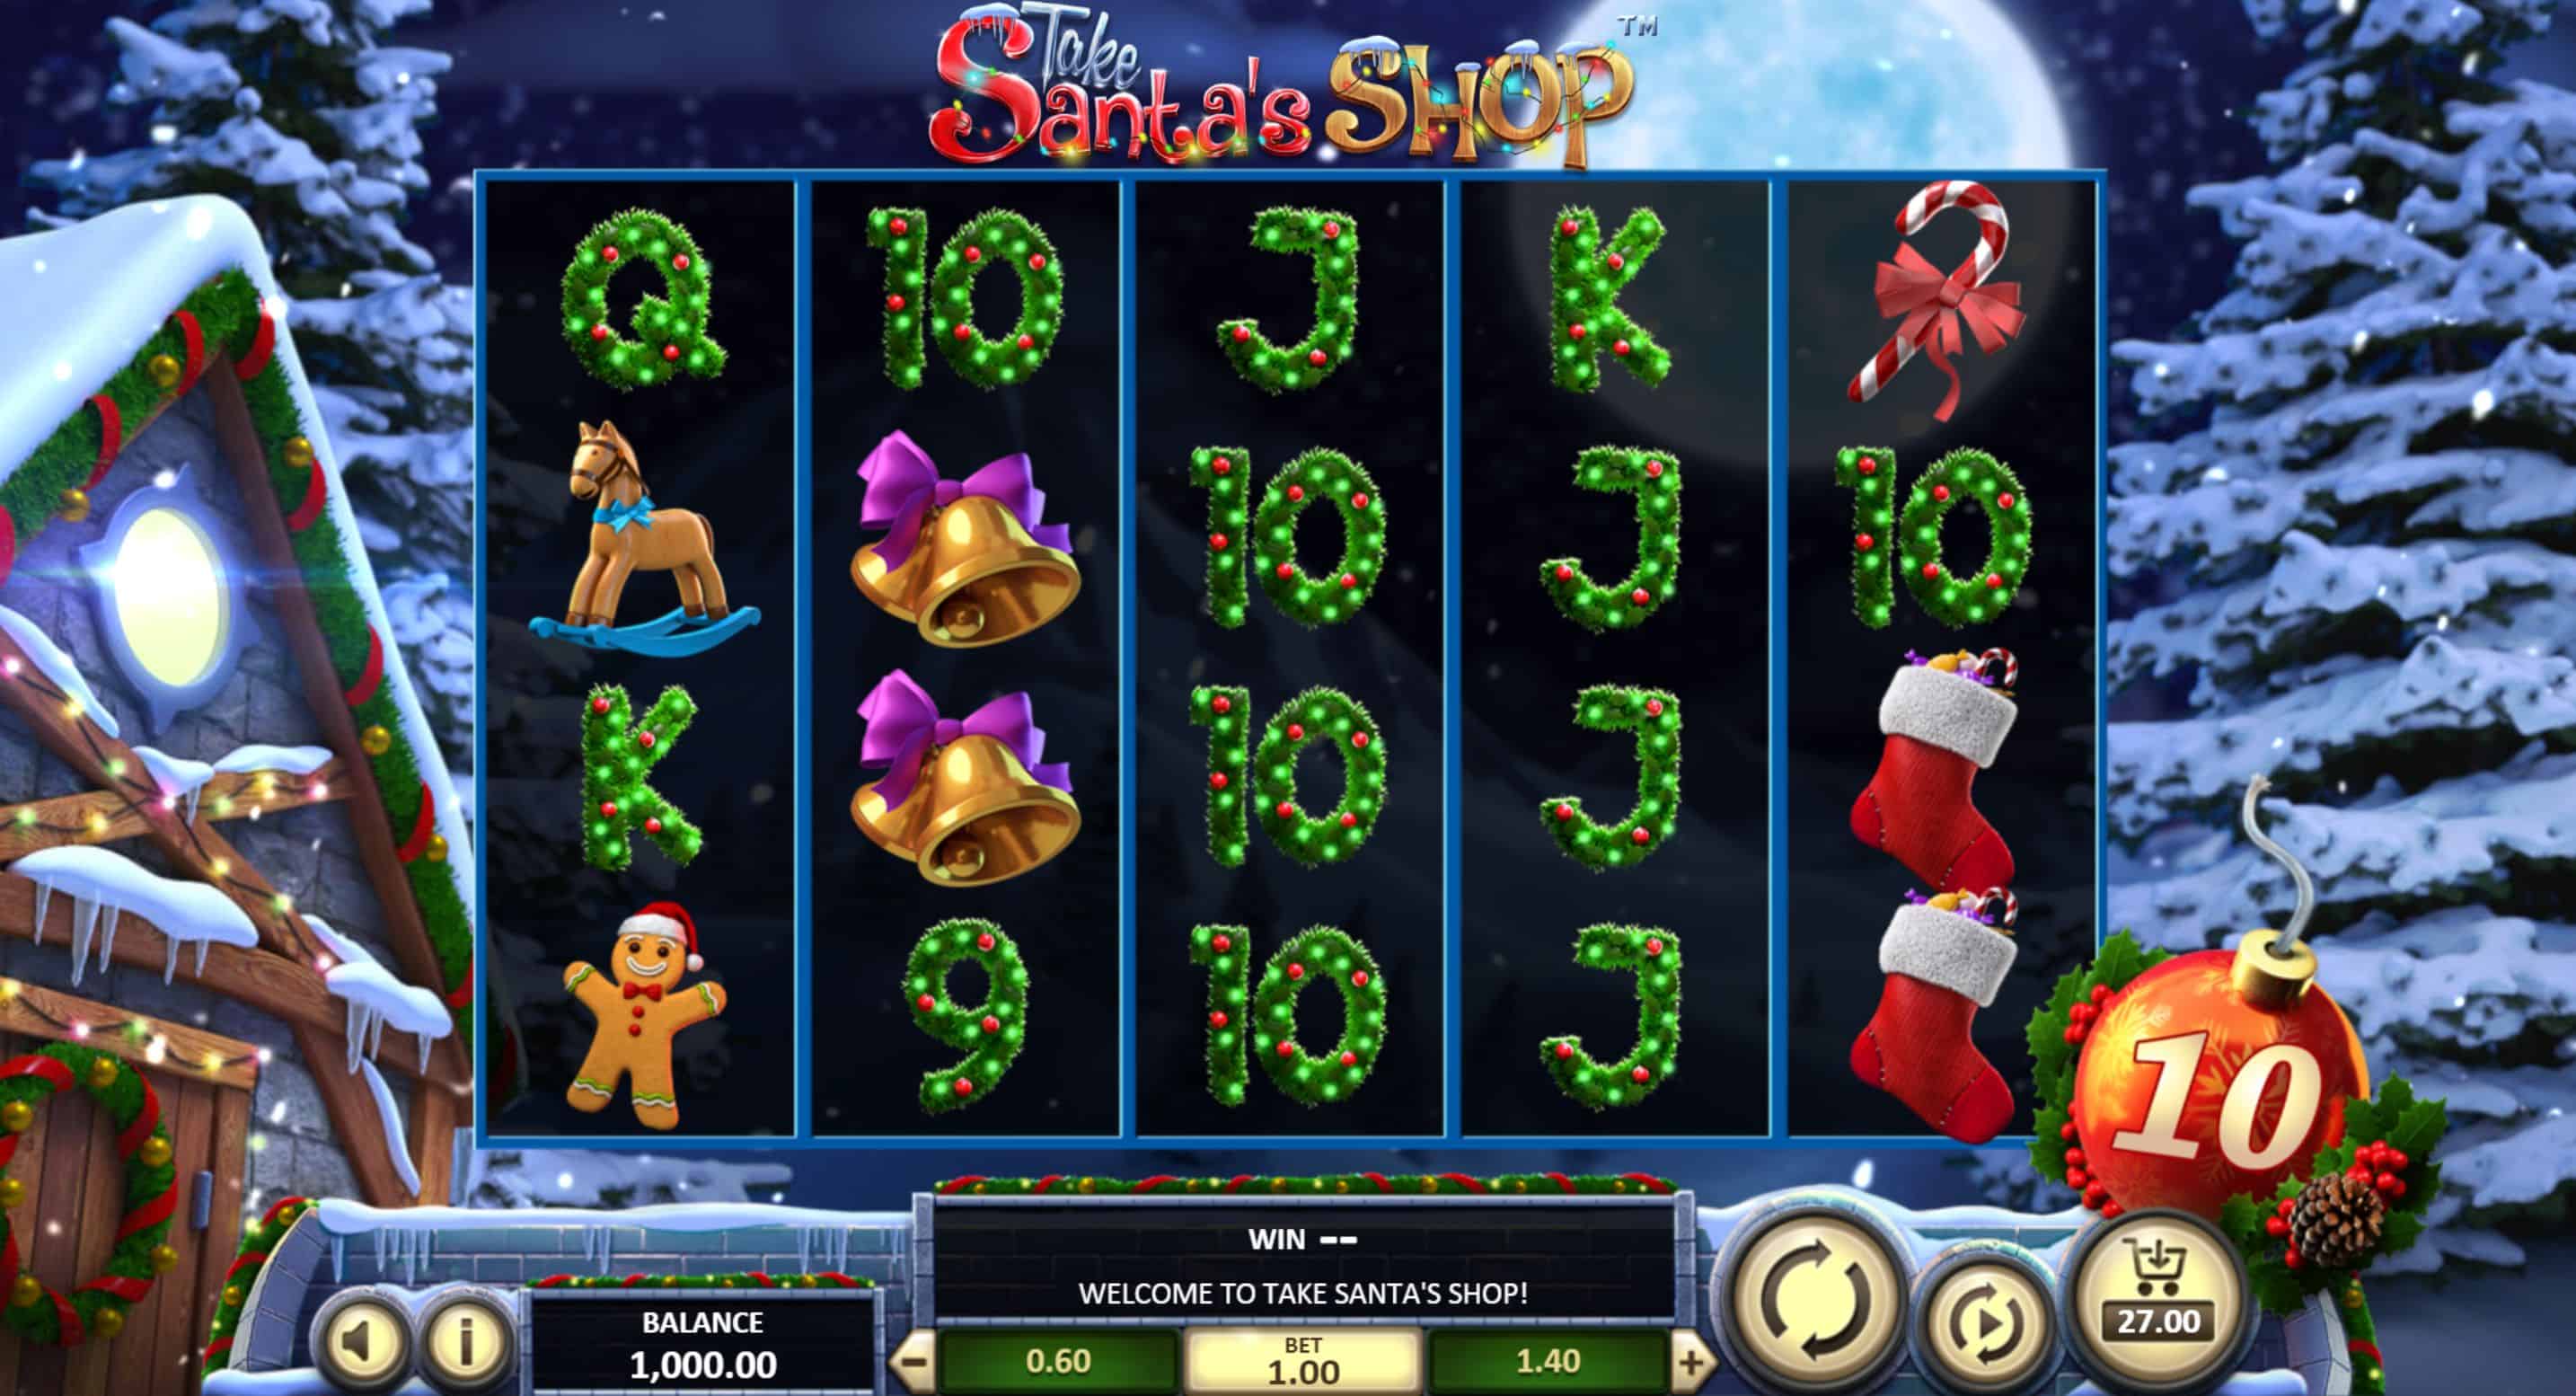 Take Santas Shop Slot Game Free Play at Casino Ireland 01